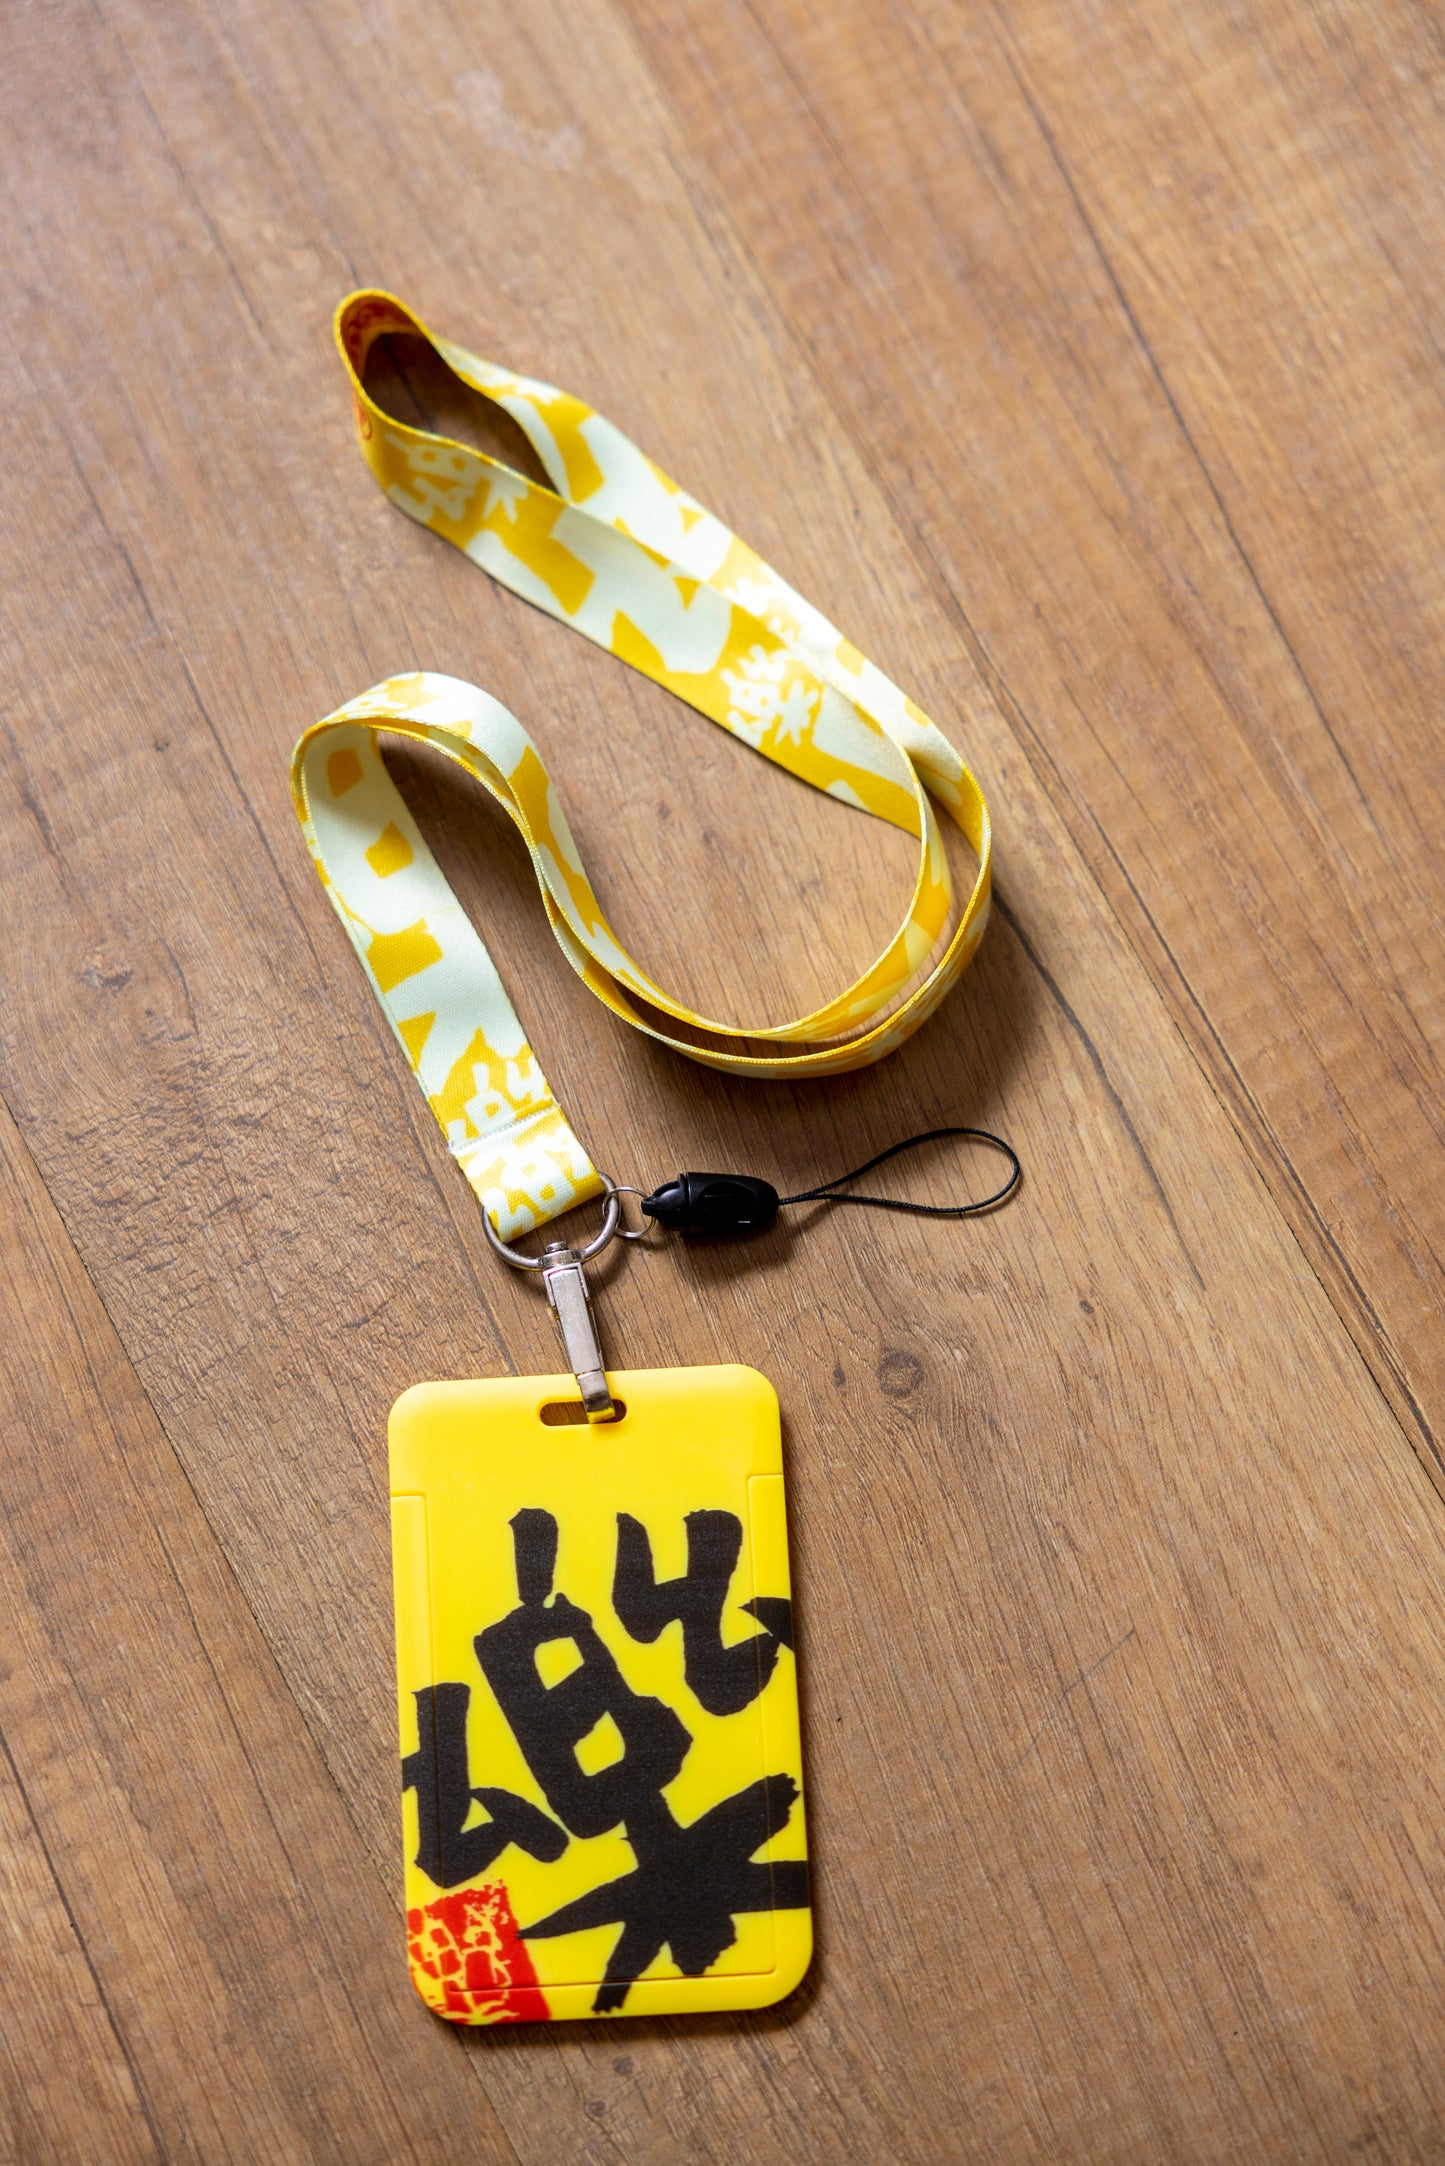 黄色“樂行天下”卡套带挂绳 (黄色挂绳，黄底黑字卡套） (New) Yellow Joyful Journey cardholder and lanyard